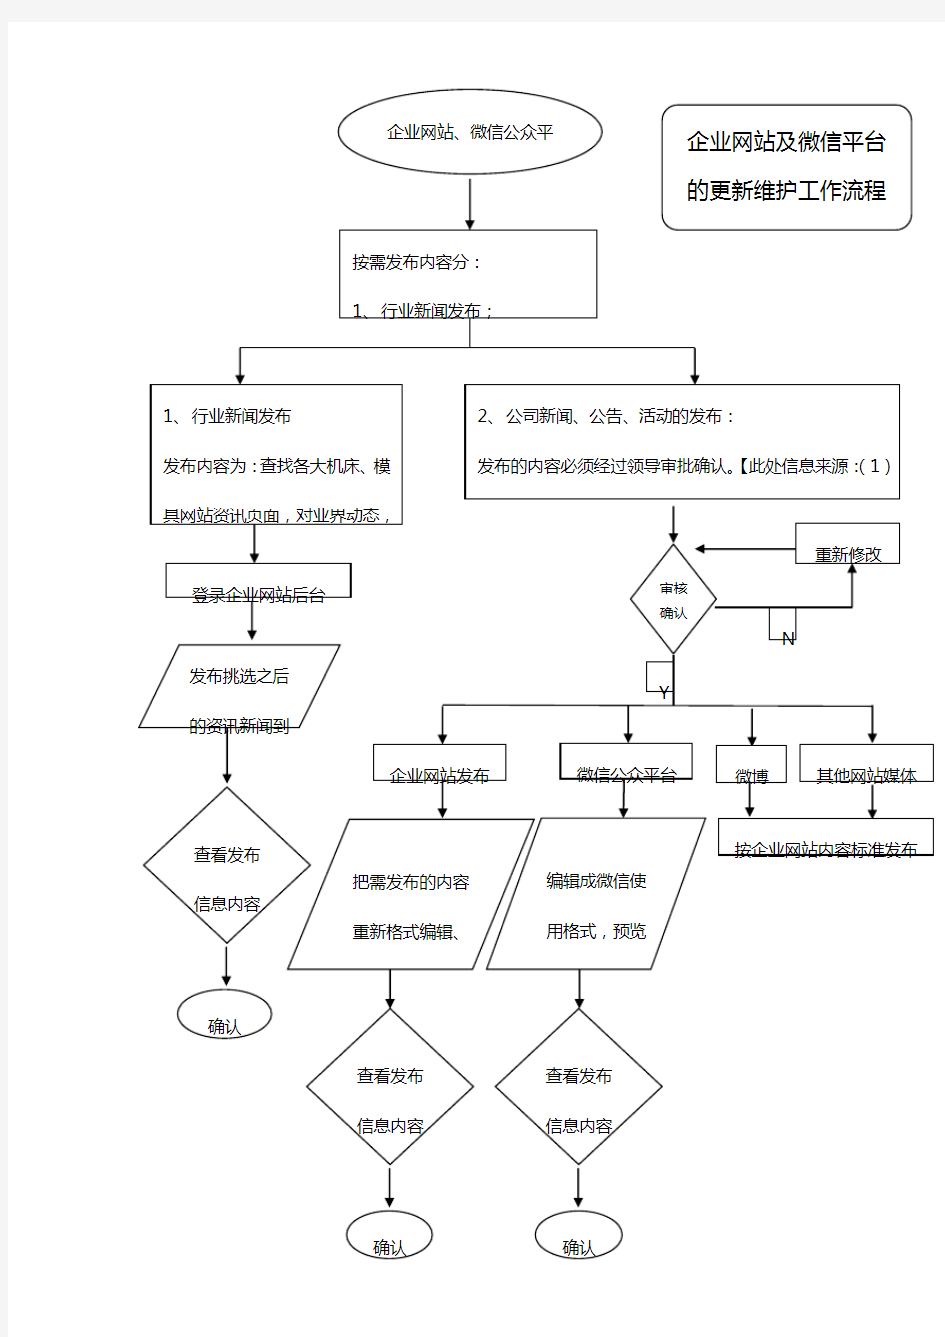 网络管理员工作流程图 (1)